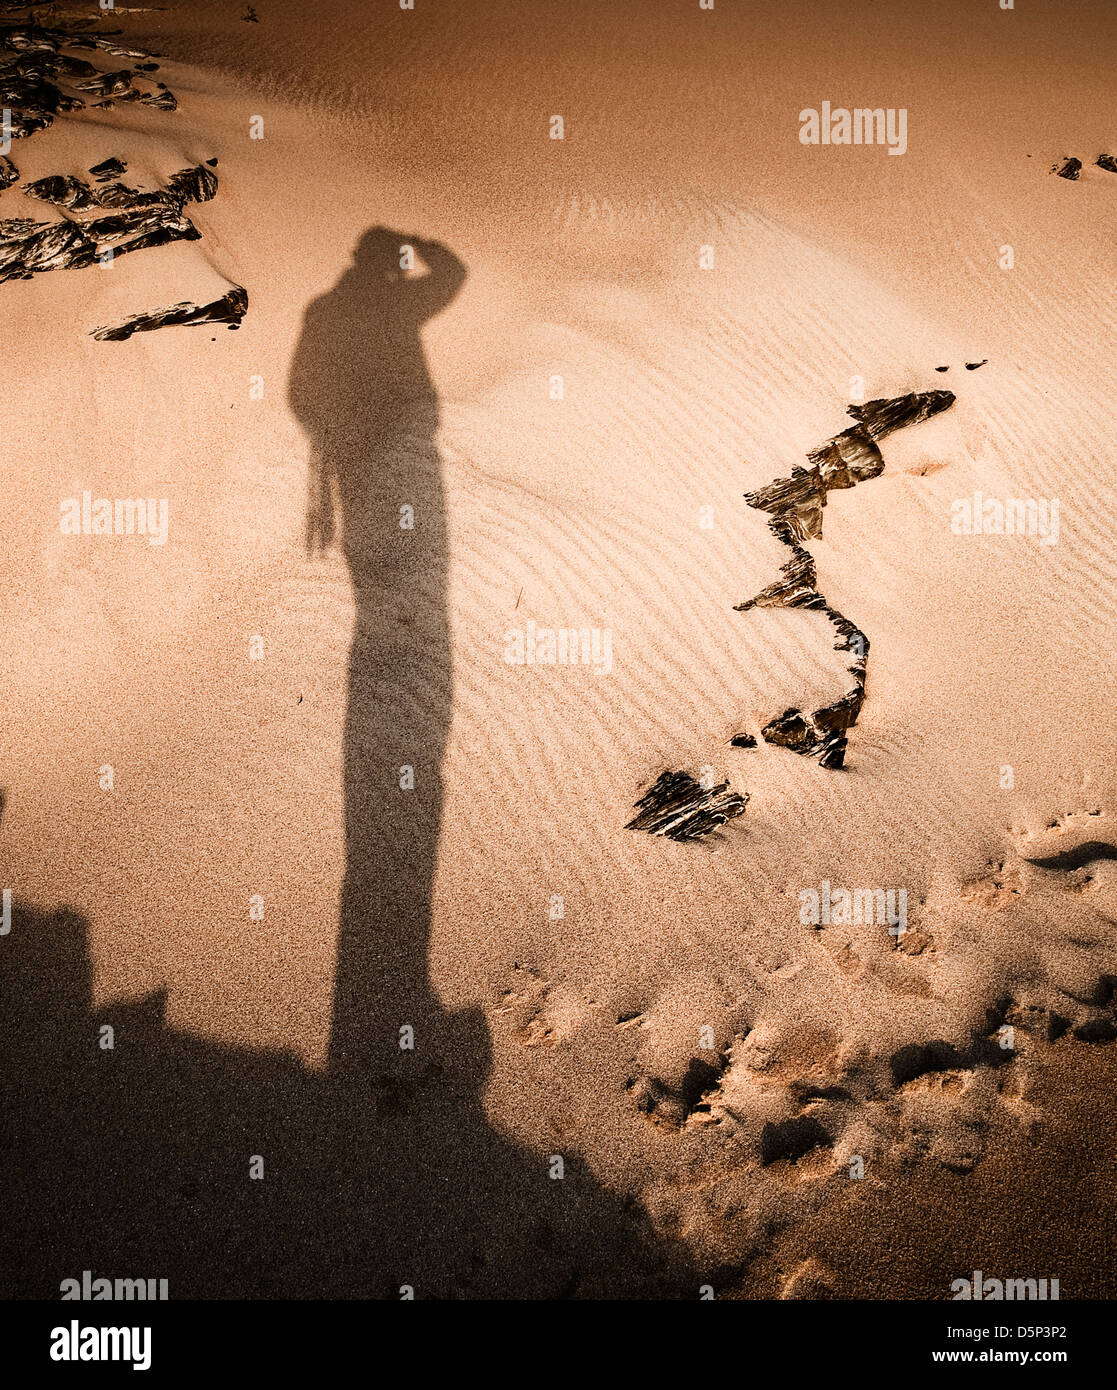 Photographe de l'ombre dans le sable. La photo montre un photographe pris une photo de son ombre. Banque D'Images